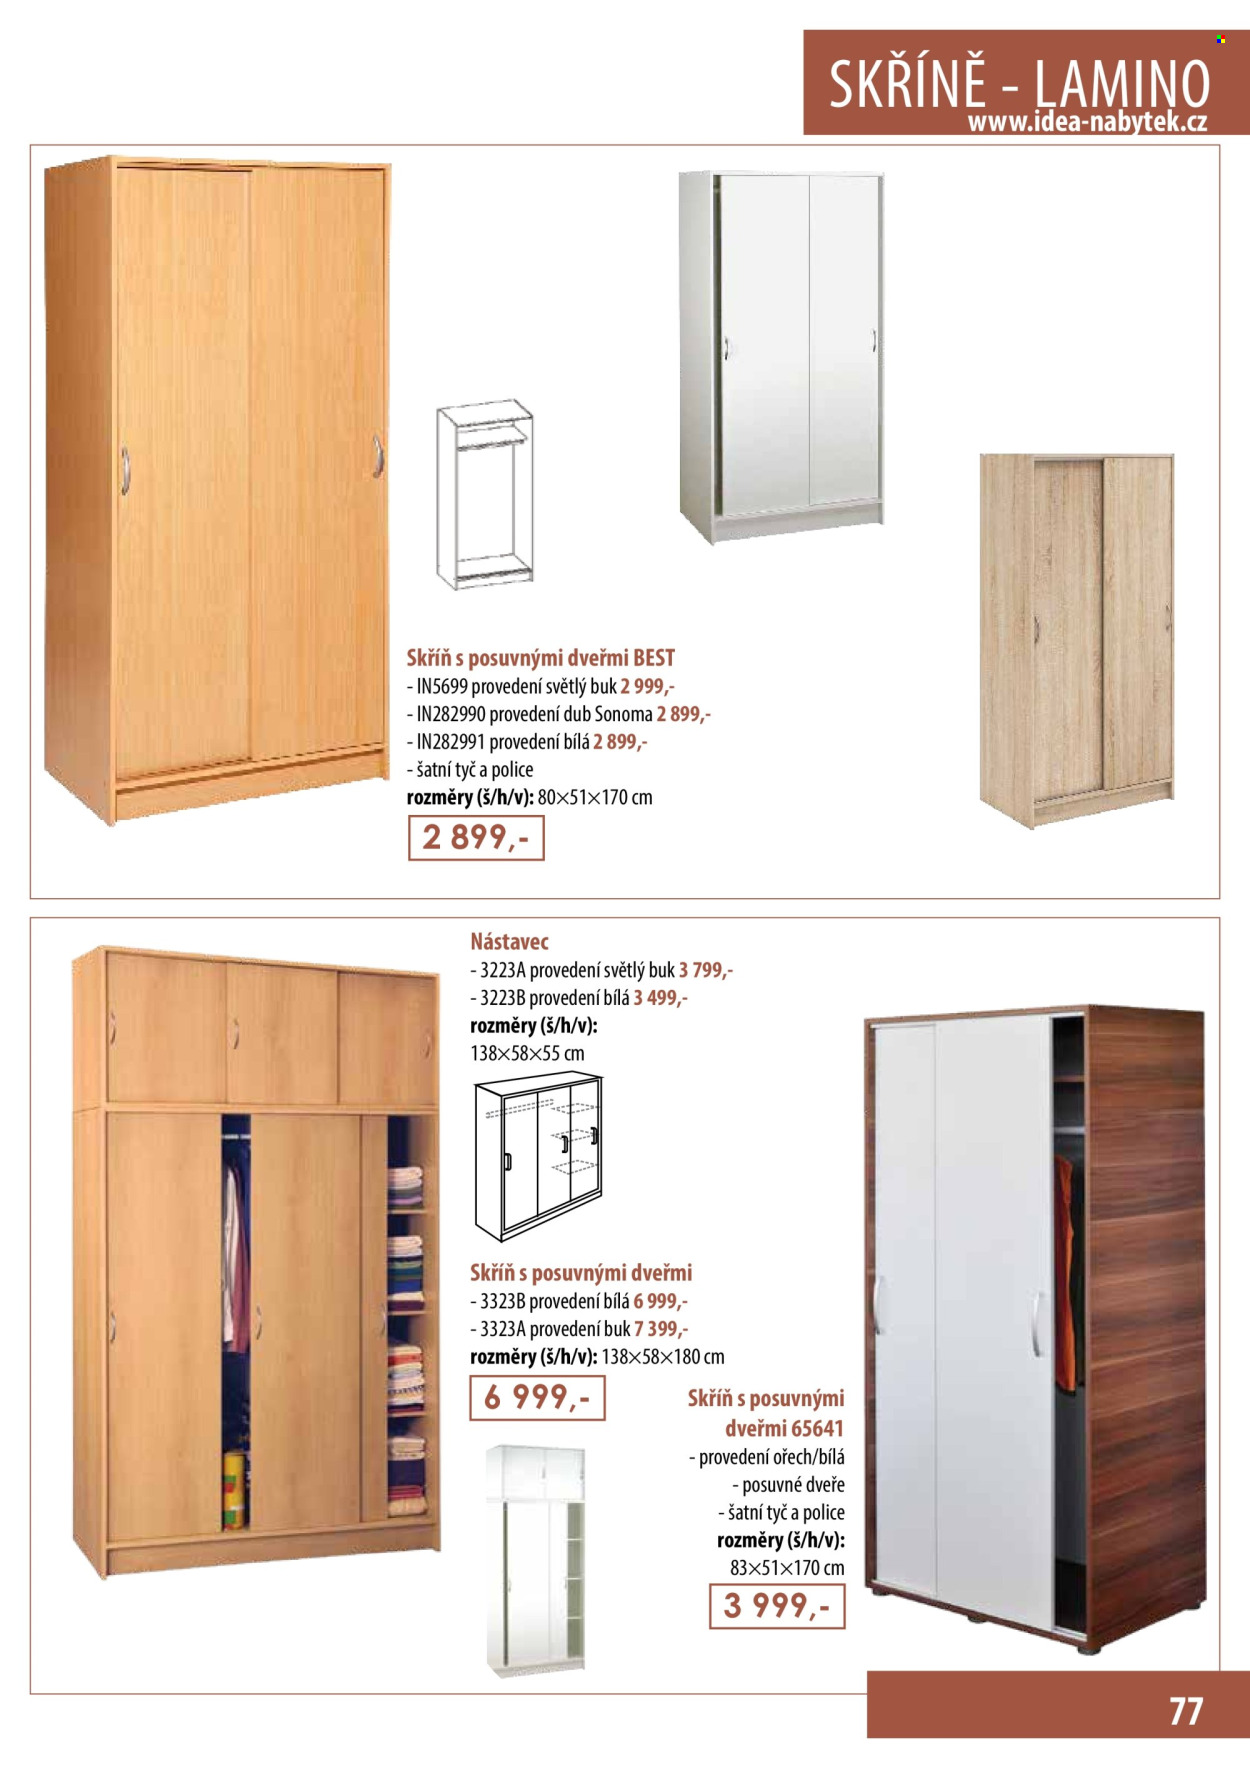 thumbnail - Leták IDEA nábytek - Produkty v akci - skříň, skříň s posuvnými dveřmi. Strana 77.